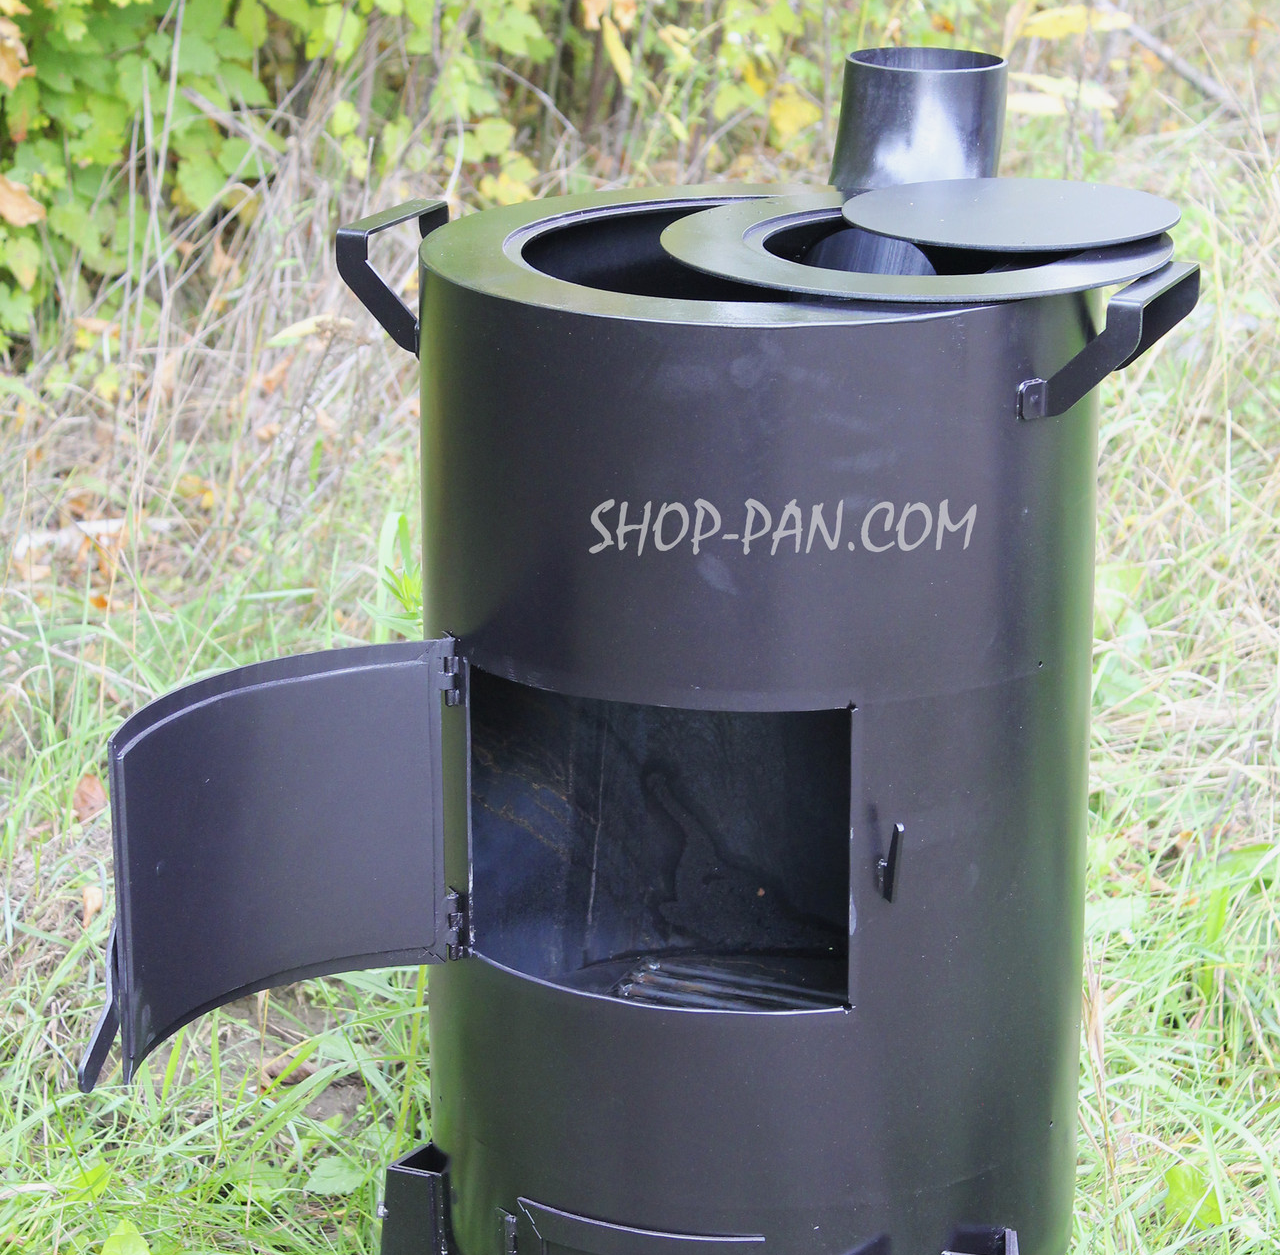 Піч-буржуйка SHOP-PAN 3 мм із варильною поверхнею на дровах для внутрішнього нагрівання приміщень Купити тільки